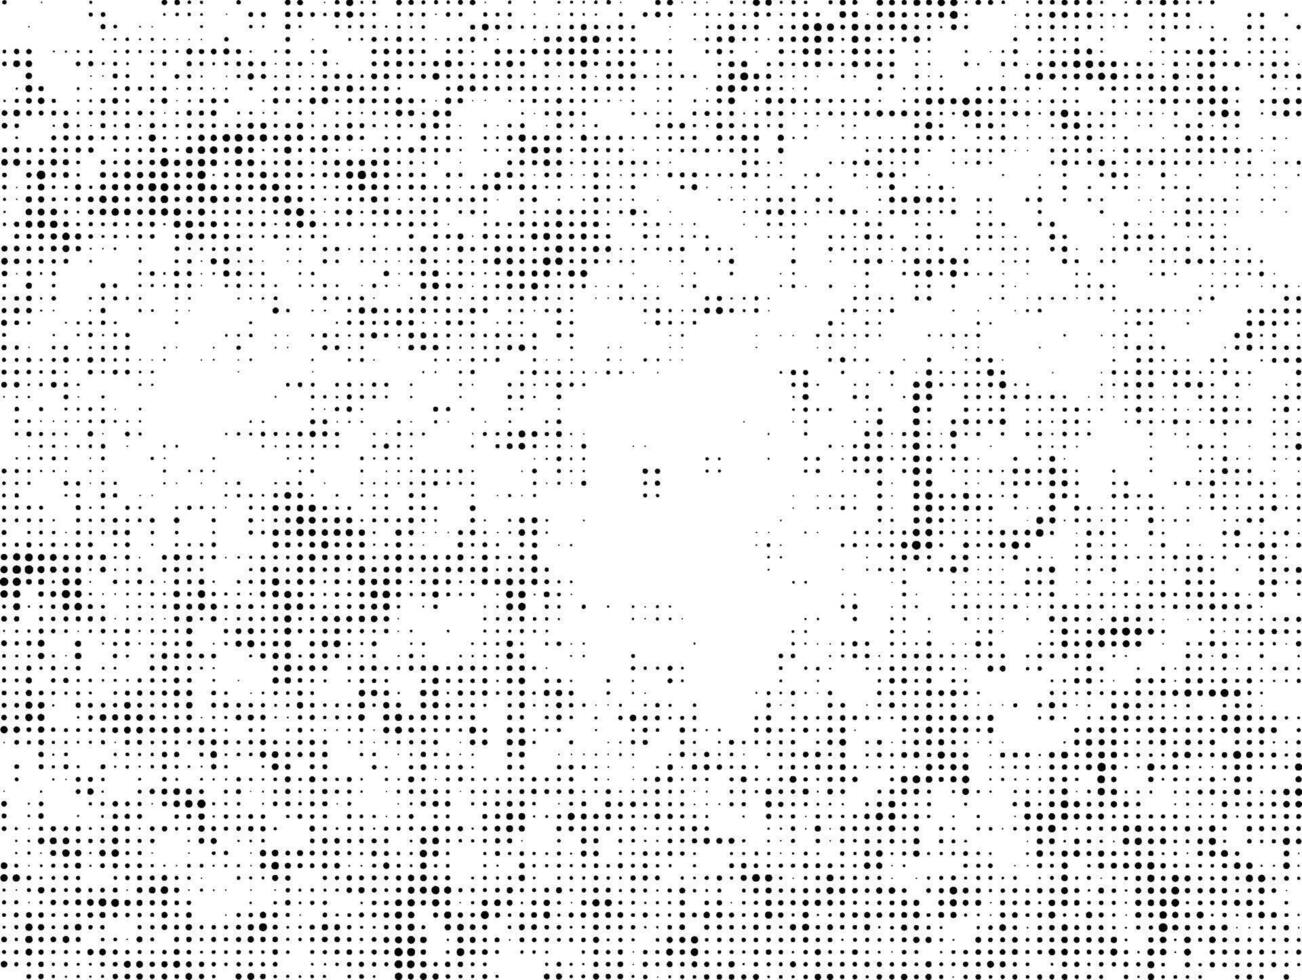 en svart och vit halvton mönster med prickar, en svart och vit halvton mönster med prickar, abstrakt halvton punkt vektor